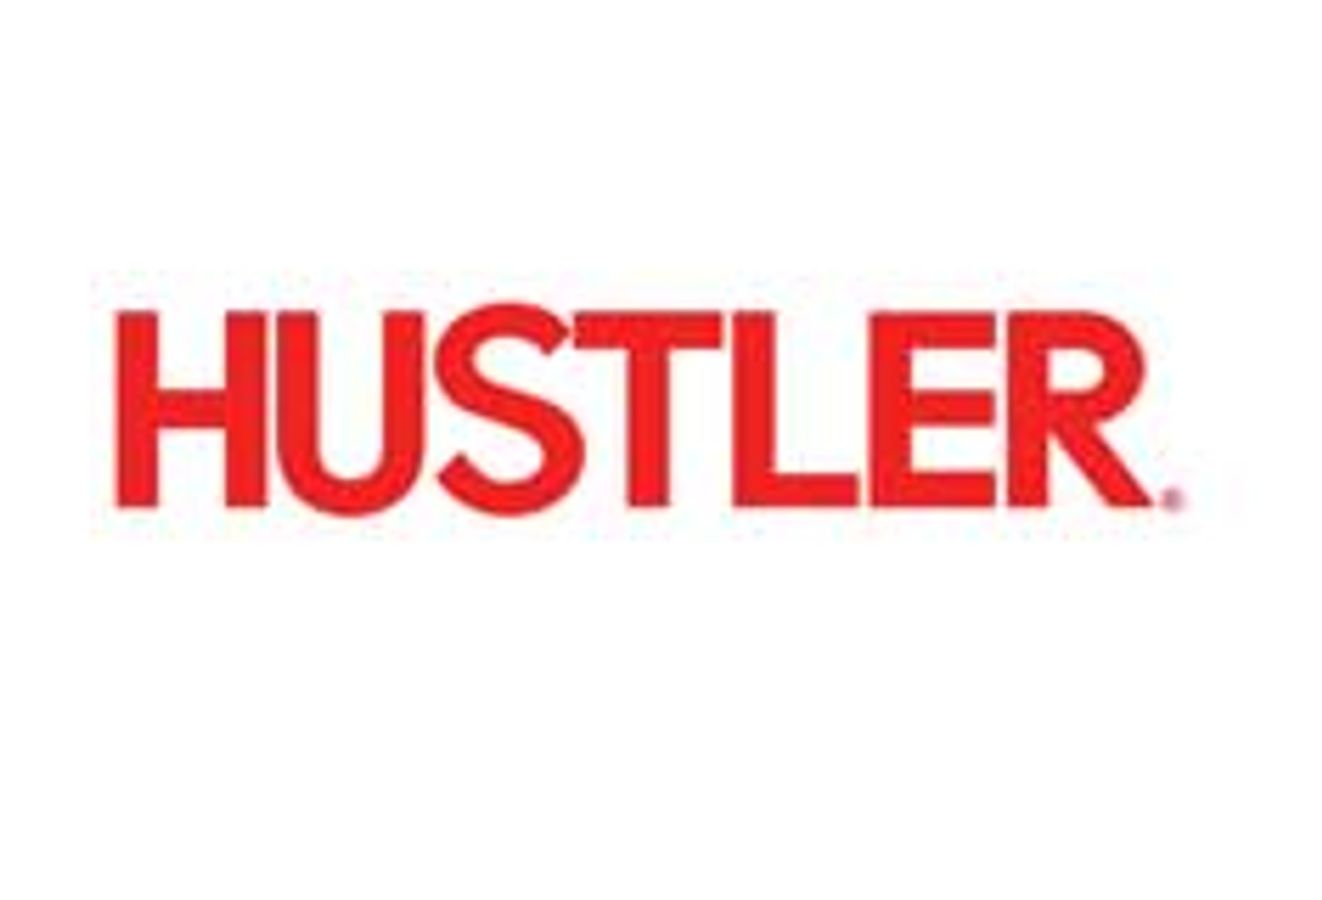 Hustler magazine